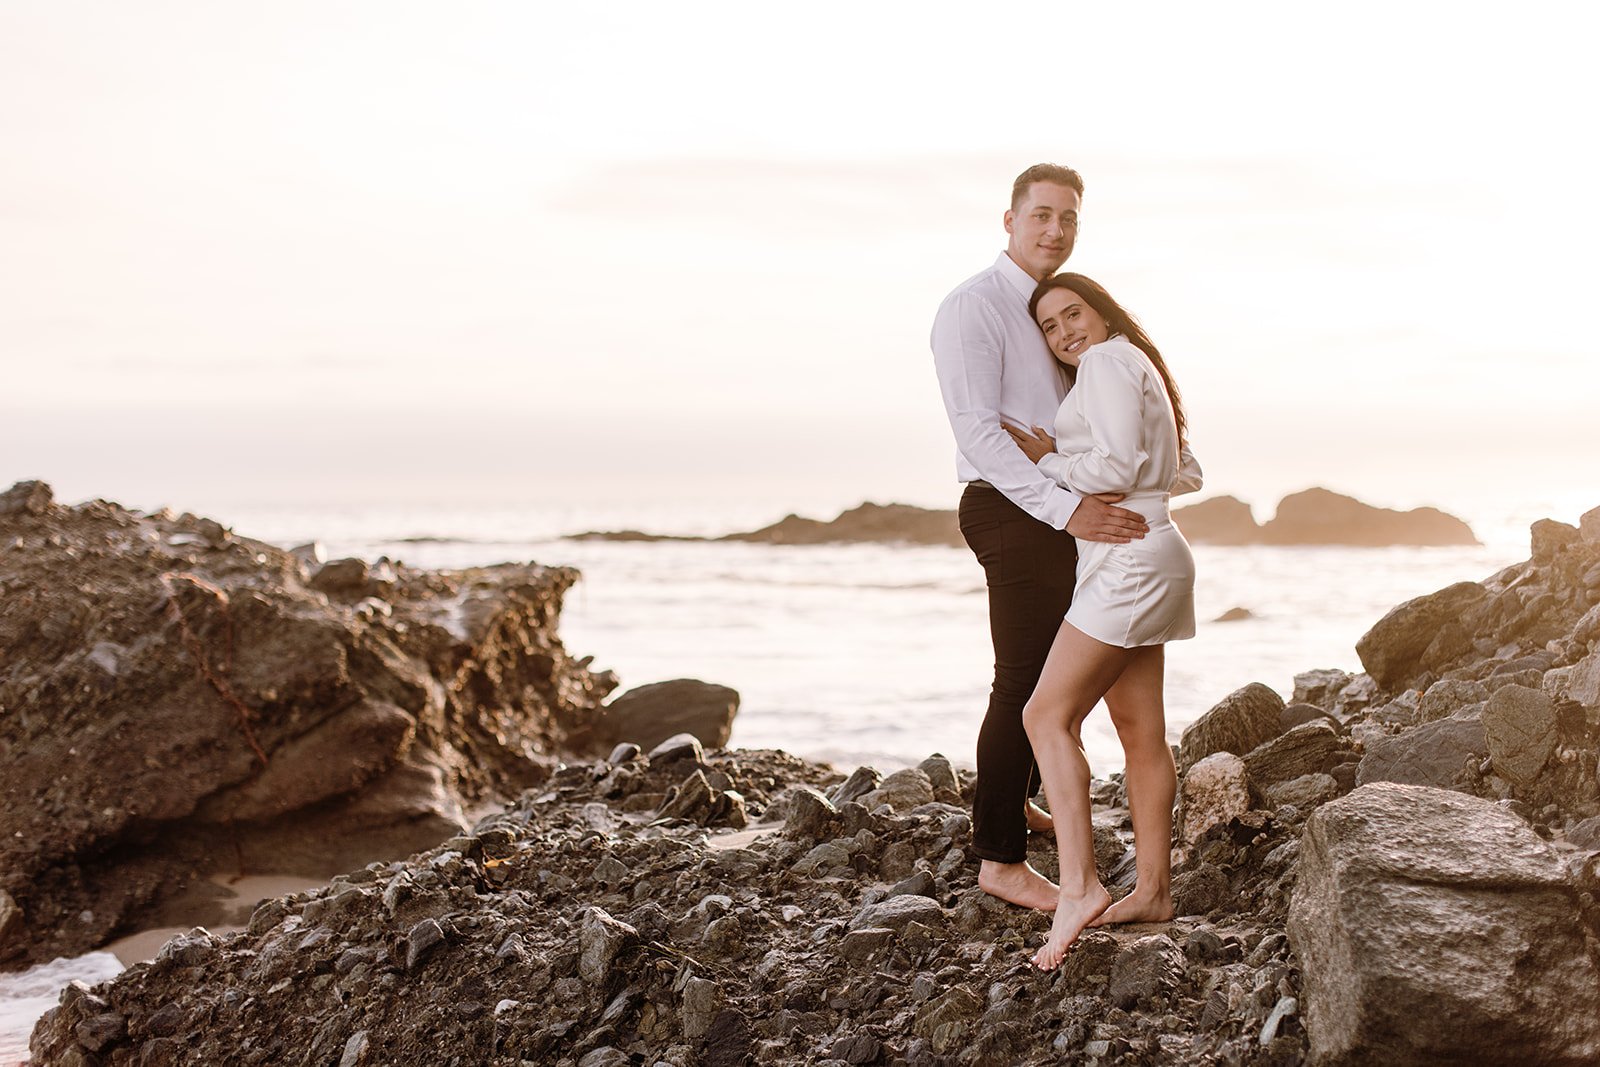 Laguna Beach Engagement Photos At 1,000 Steps Beach: